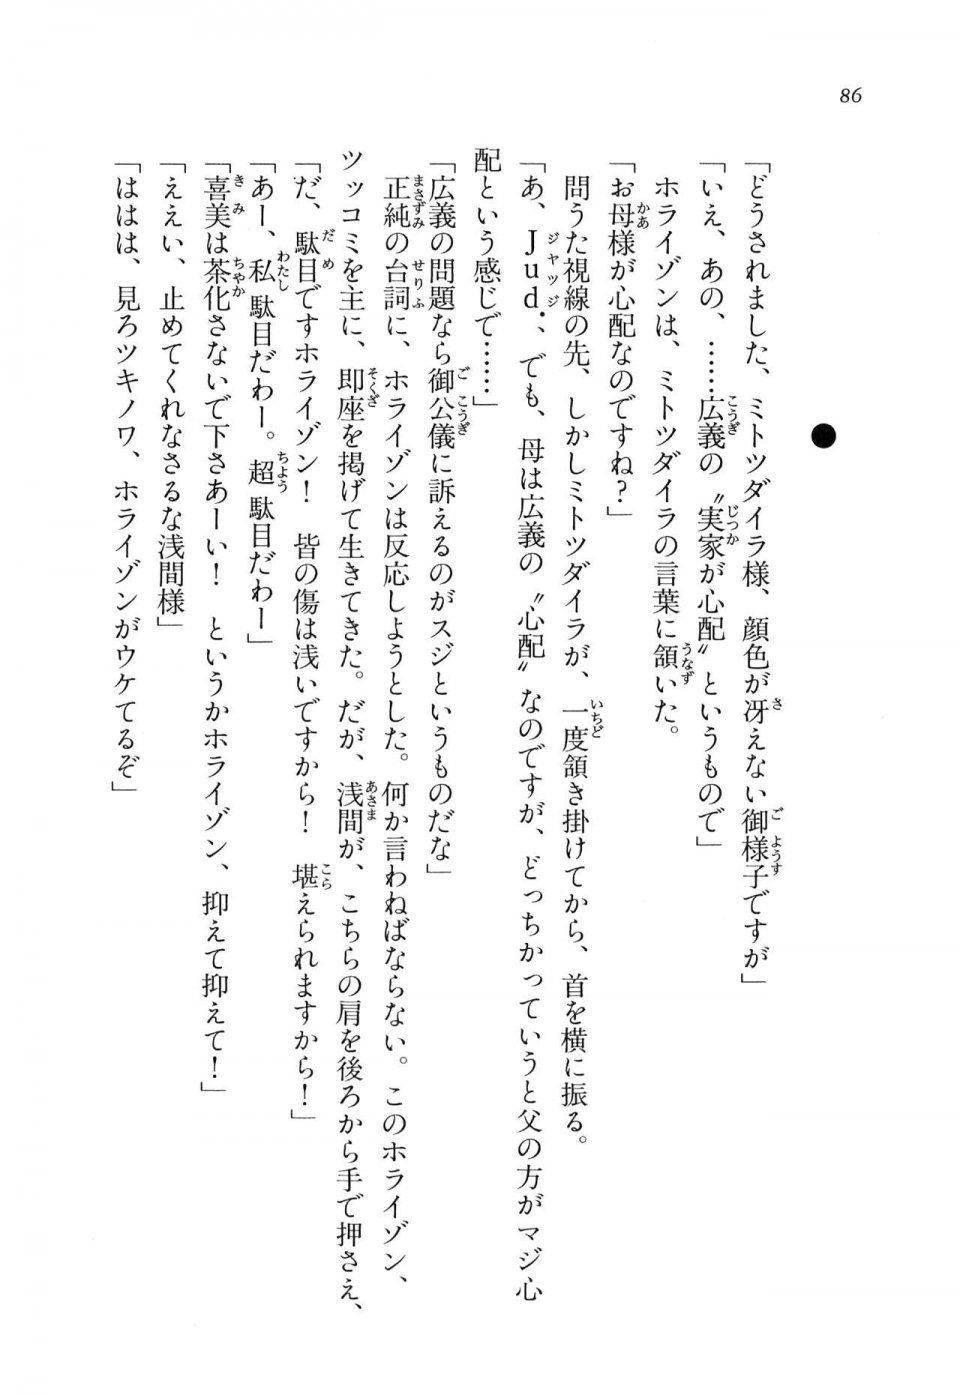 Kyoukai Senjou no Horizon LN Vol 11(5A) - Photo #86